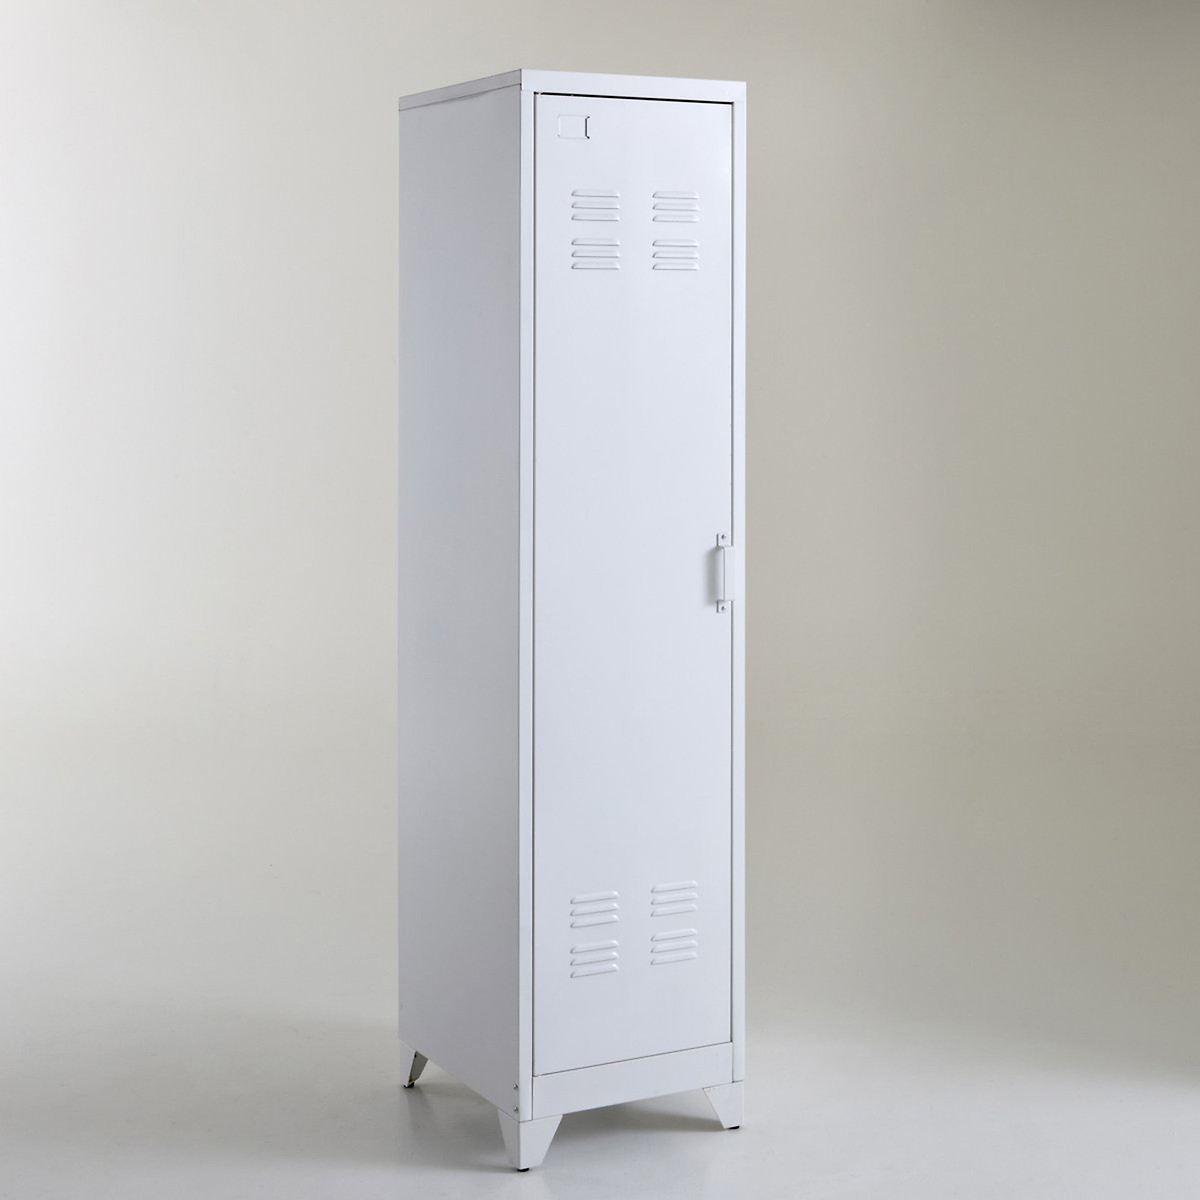 Een nacht enz Knuppel Hiba american-style metal locker storage unit La Redoute Interieurs | La  Redoute